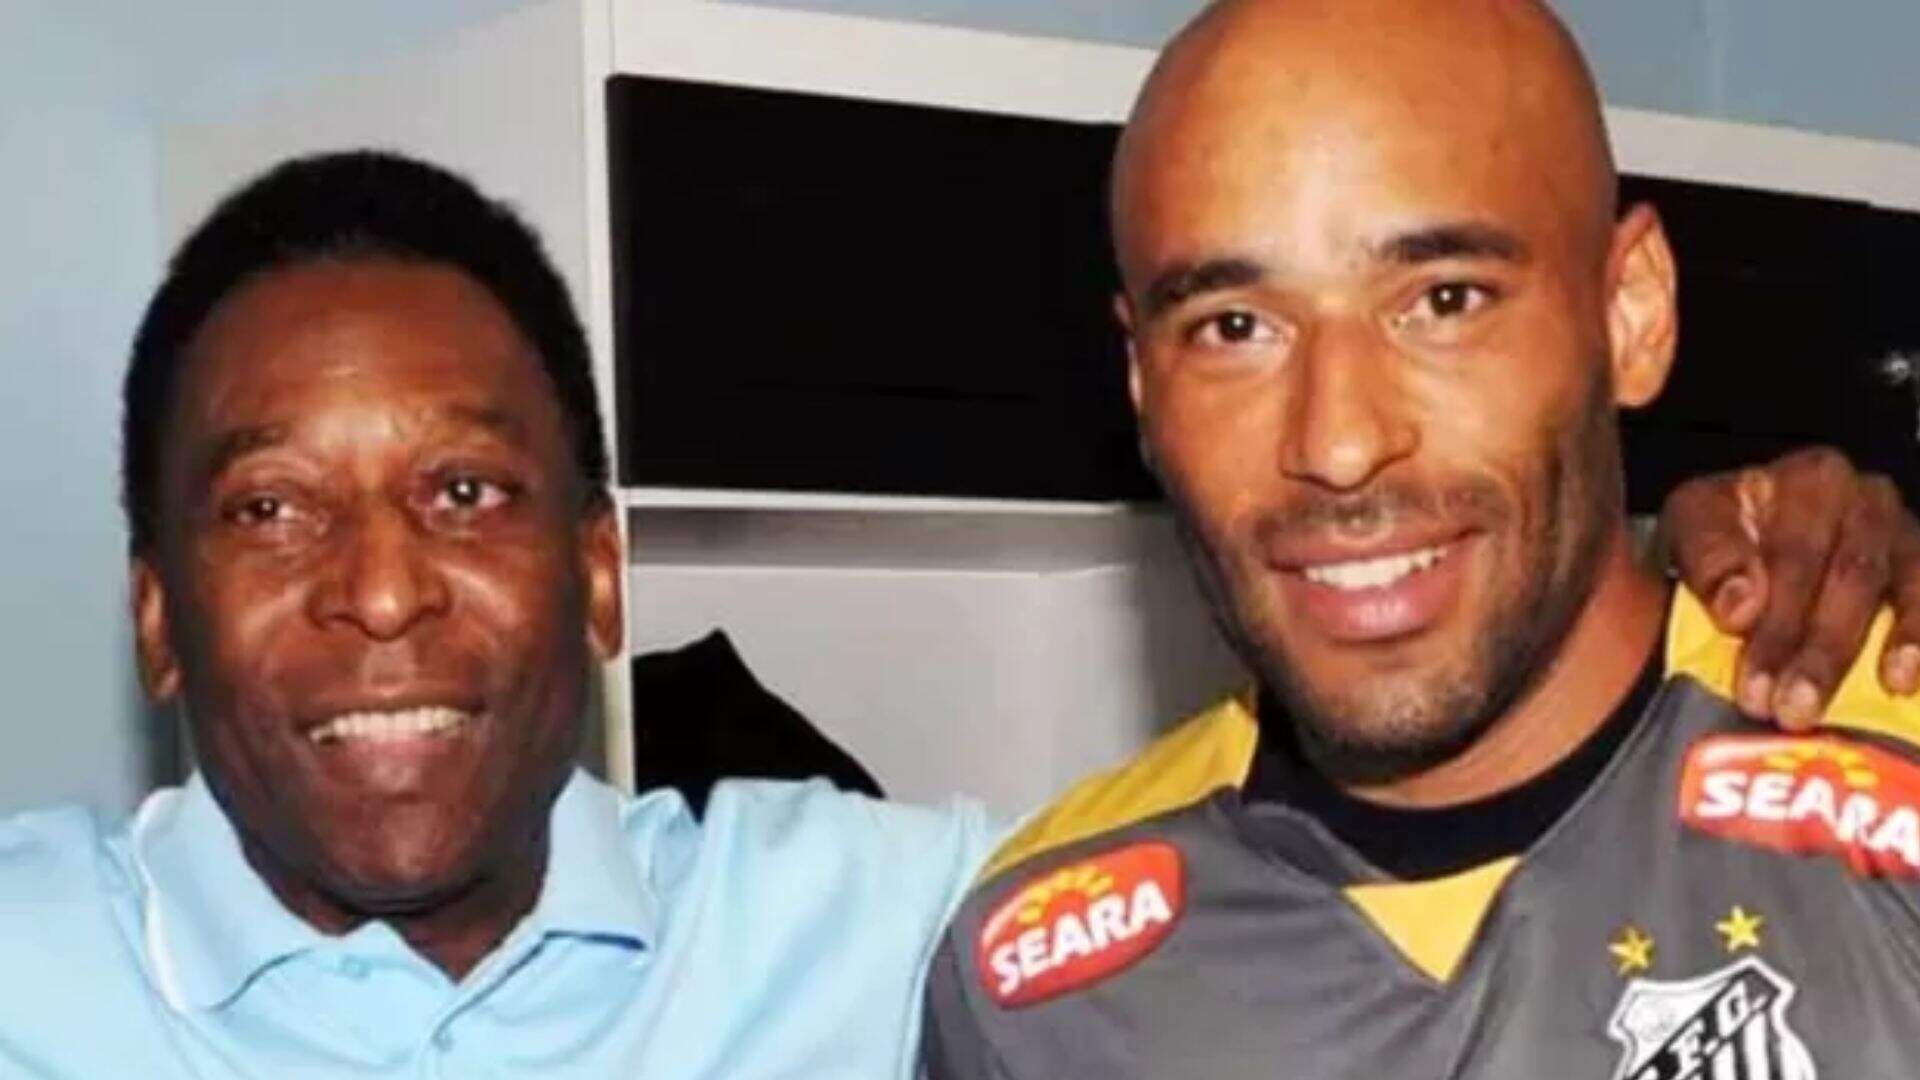 Edson Cholbi, filho de Pelé, compartilha foto rara com pai: “Força, meu pai” - Metropolitana FM